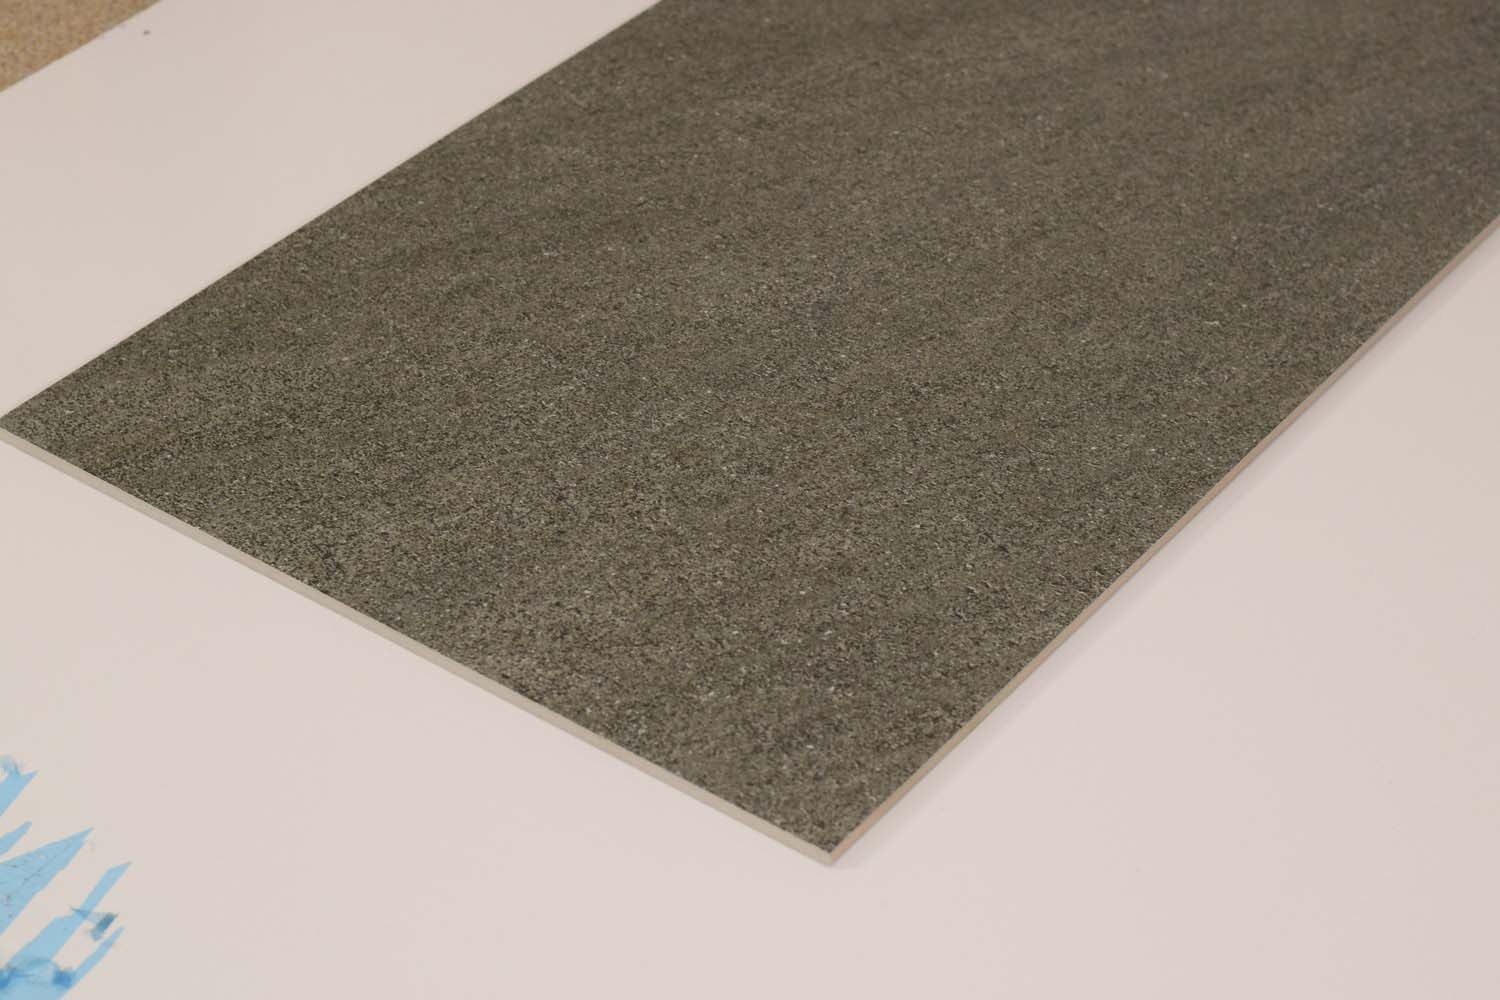 Grey Satto Rektyfikowane Wielkoformatowe Matowe Płytki Podłogowe i Ścienne z Efektem Kamienia 600x1200mm (12596) 